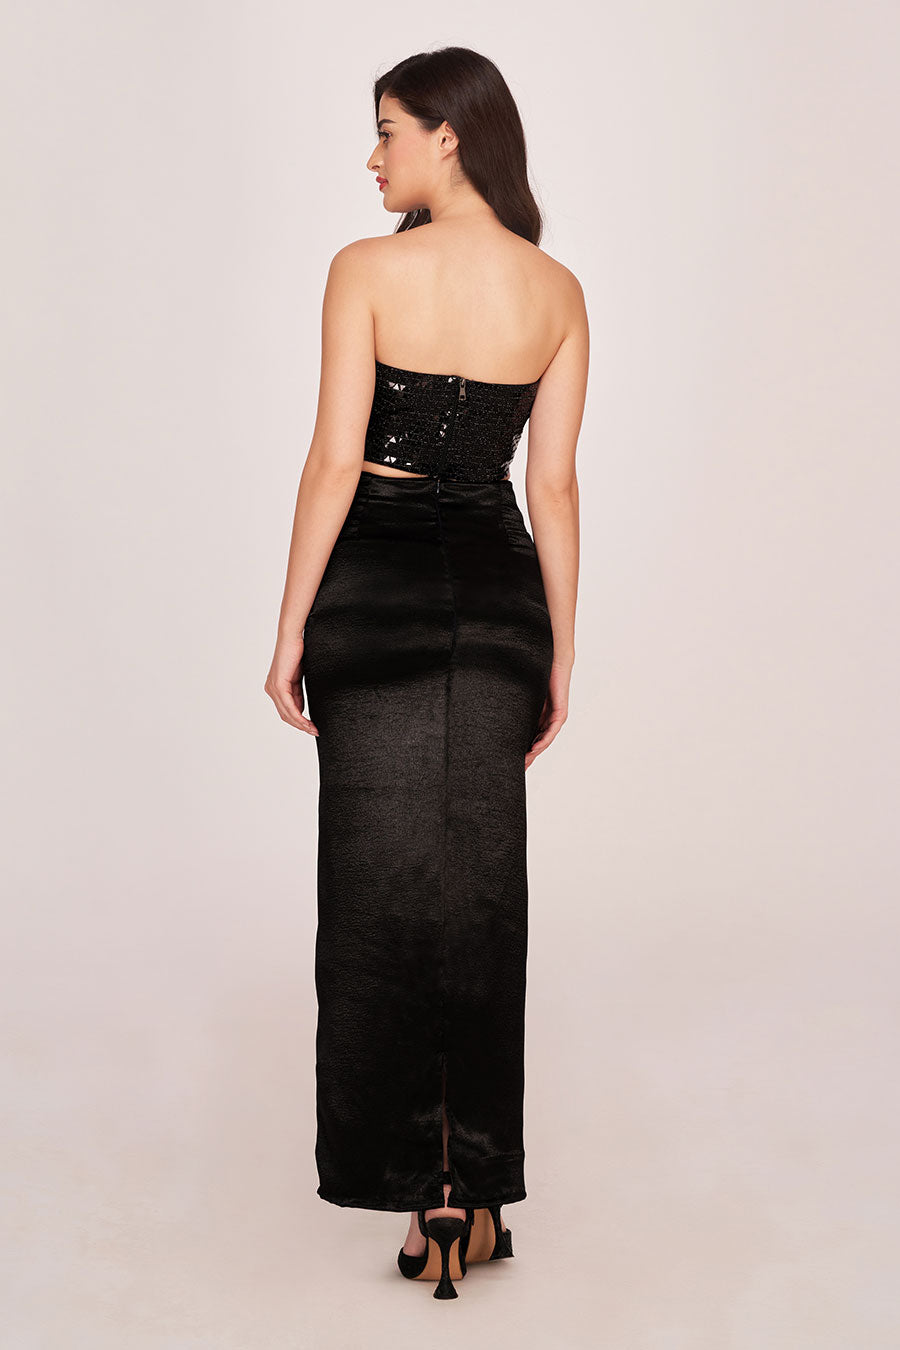 Black Embellished Top & Long Skirt Co-Ord Set